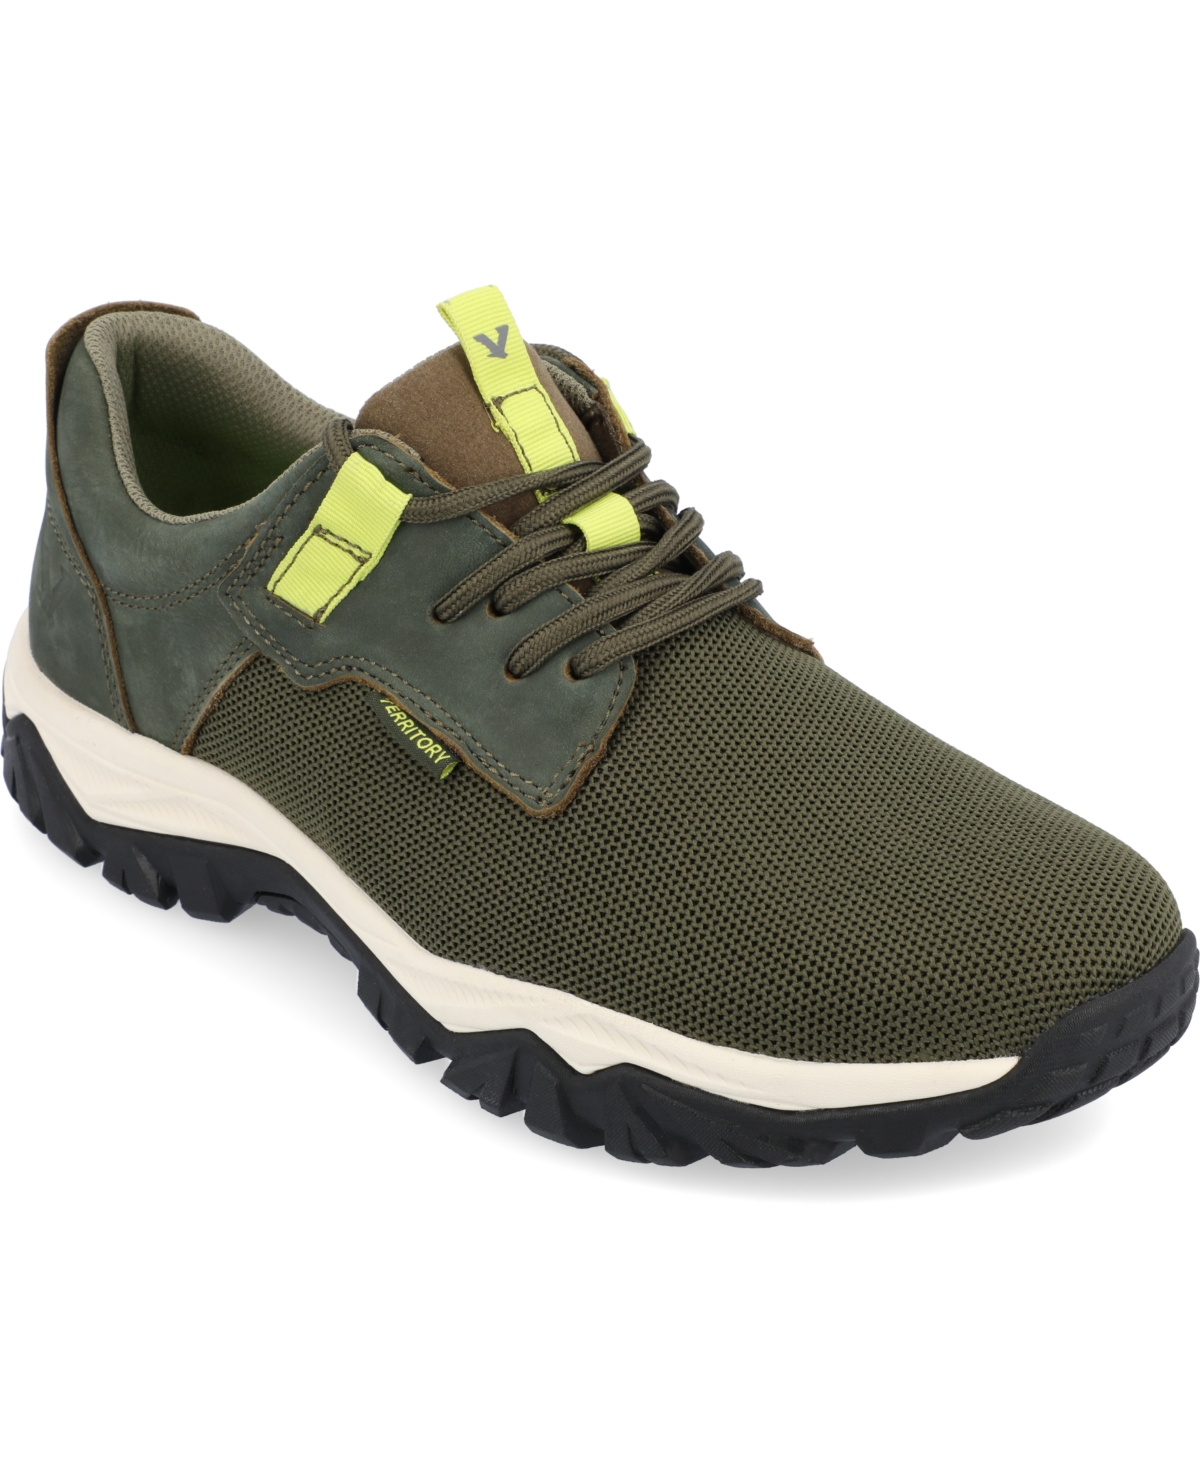 Men's Trekker Casual Knit Sneakers - Gray